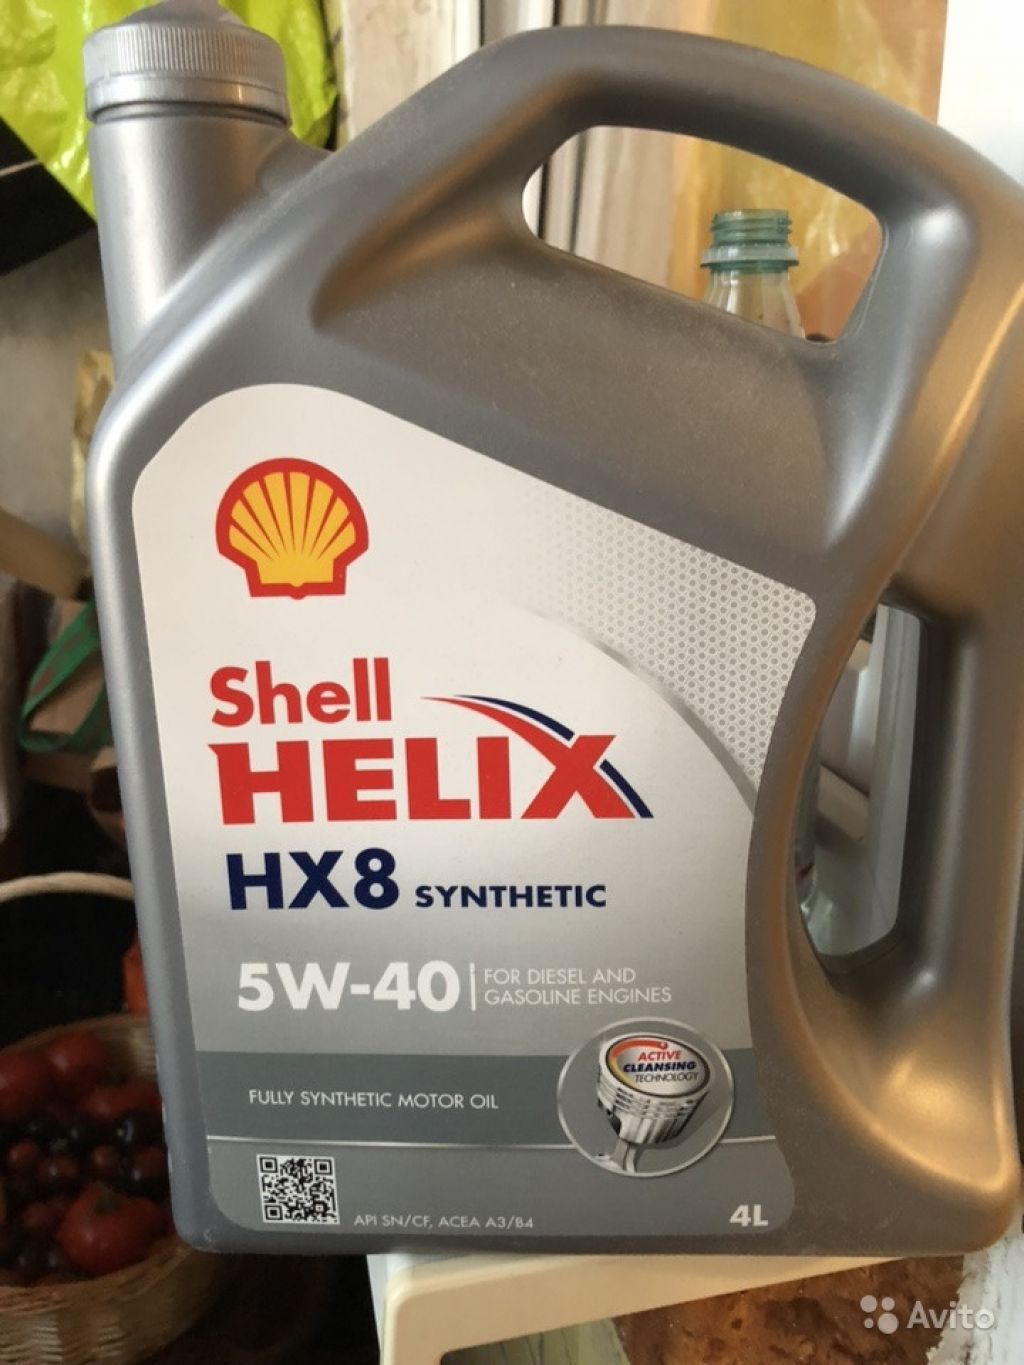 Масло helix hx8 5w 40. Shell hx8 Synthetic 5w40. HX 8 Synthetic 5w-40. Shell Helix hx8 Synthetic 5w-40. Шелл Хеликс hx8 5w40 синтетика.